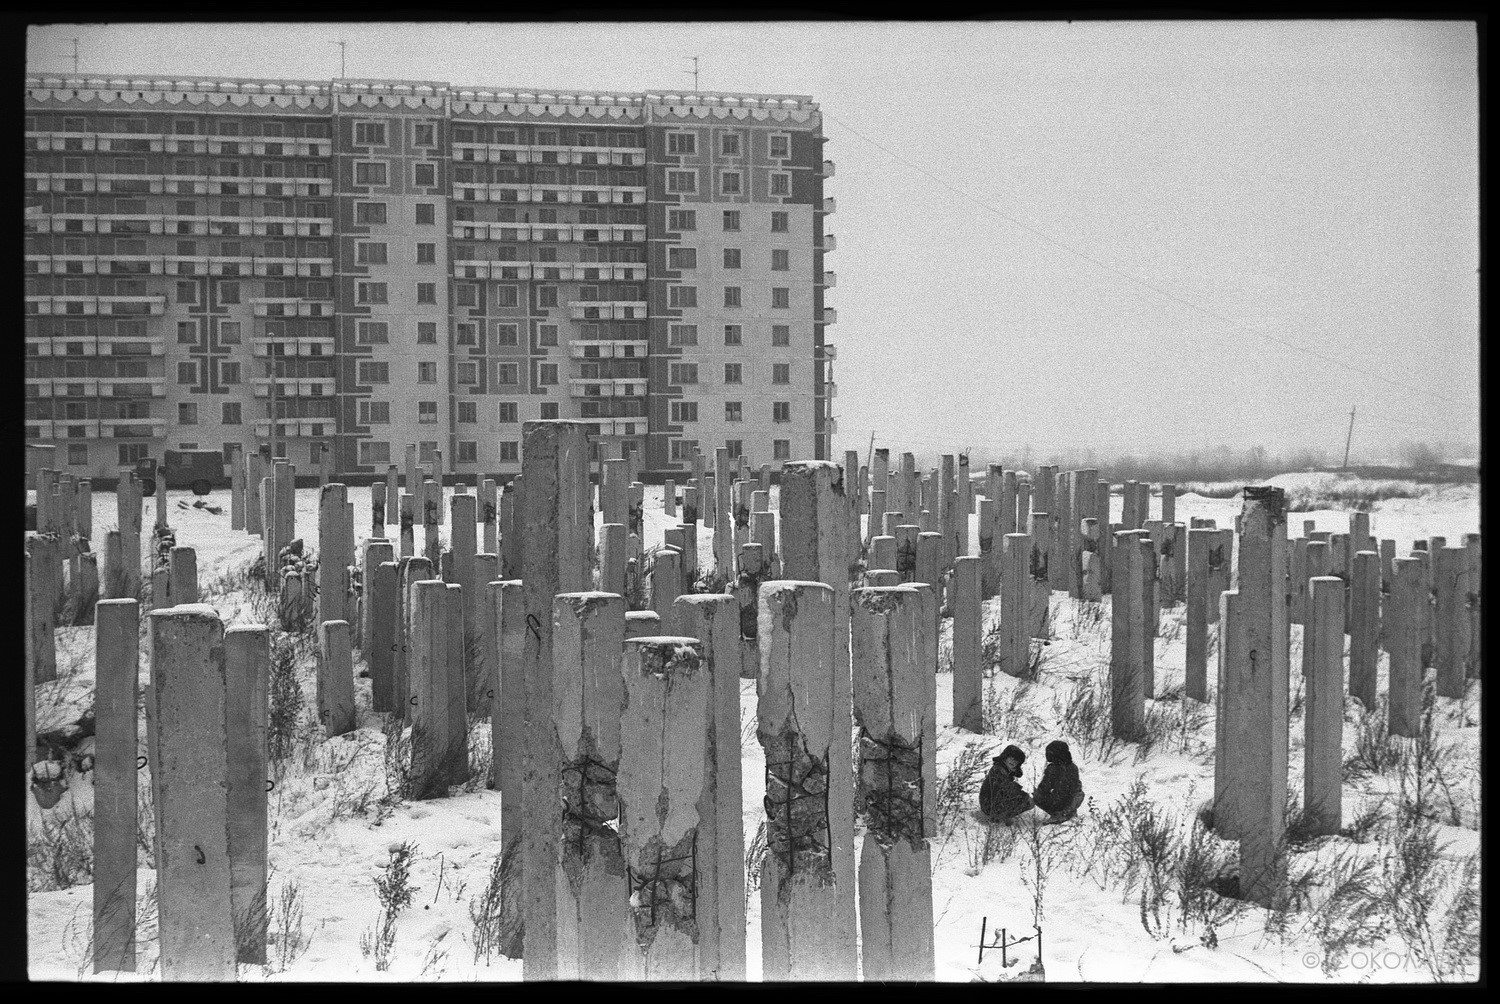 Двое среди свай на улице Кирова, Новокузнецк, 1983. Фотограф Владимир Соколаев